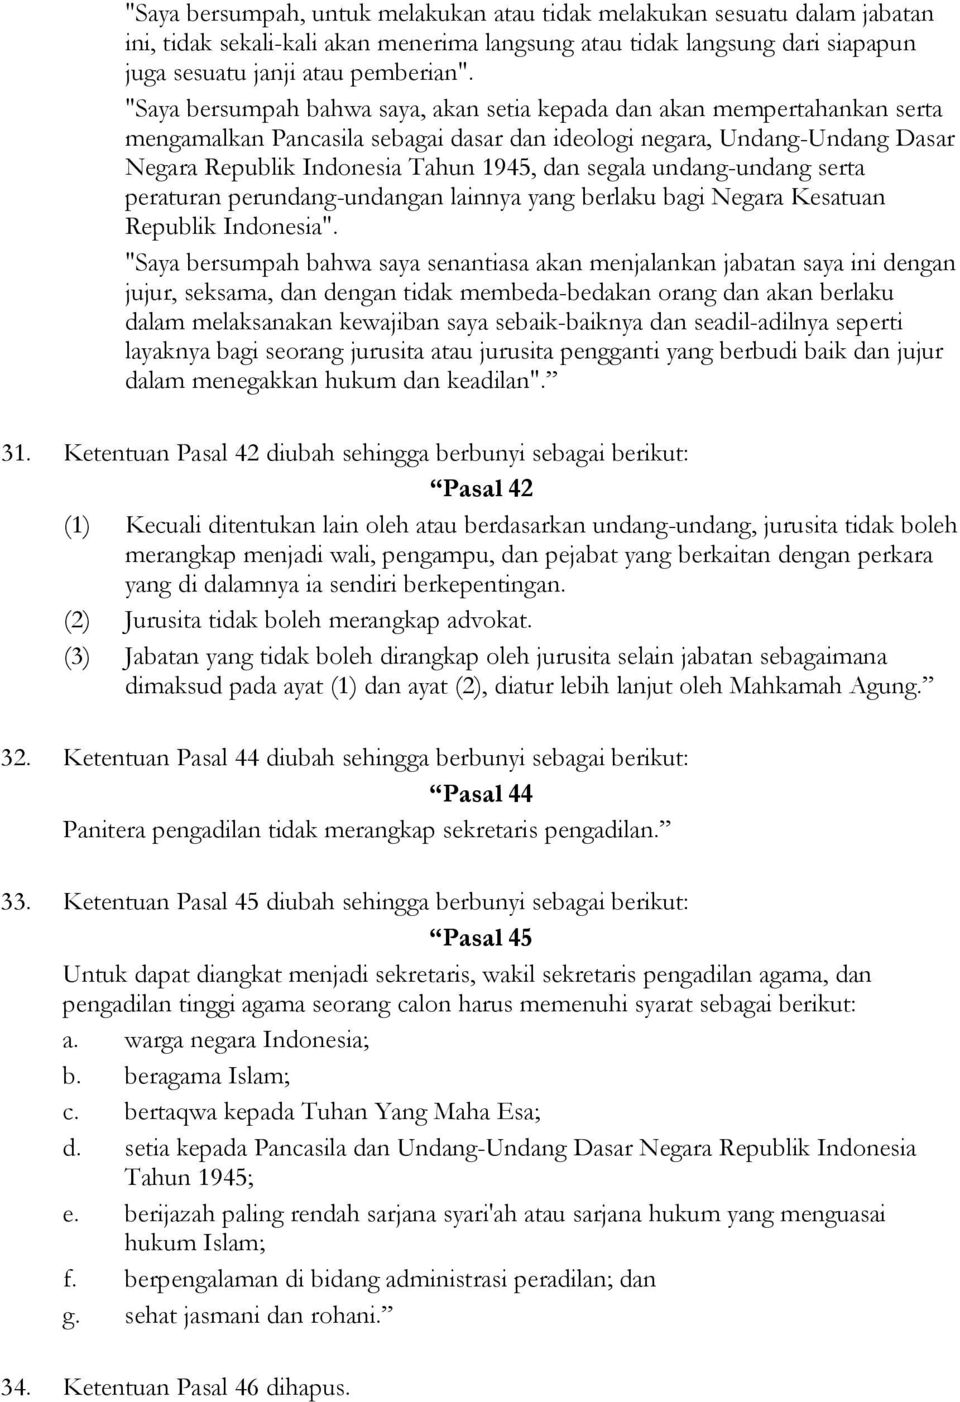 segala undang-undang serta peraturan perundang-undangan lainnya yang berlaku bagi Negara Kesatuan Republik Indonesia".